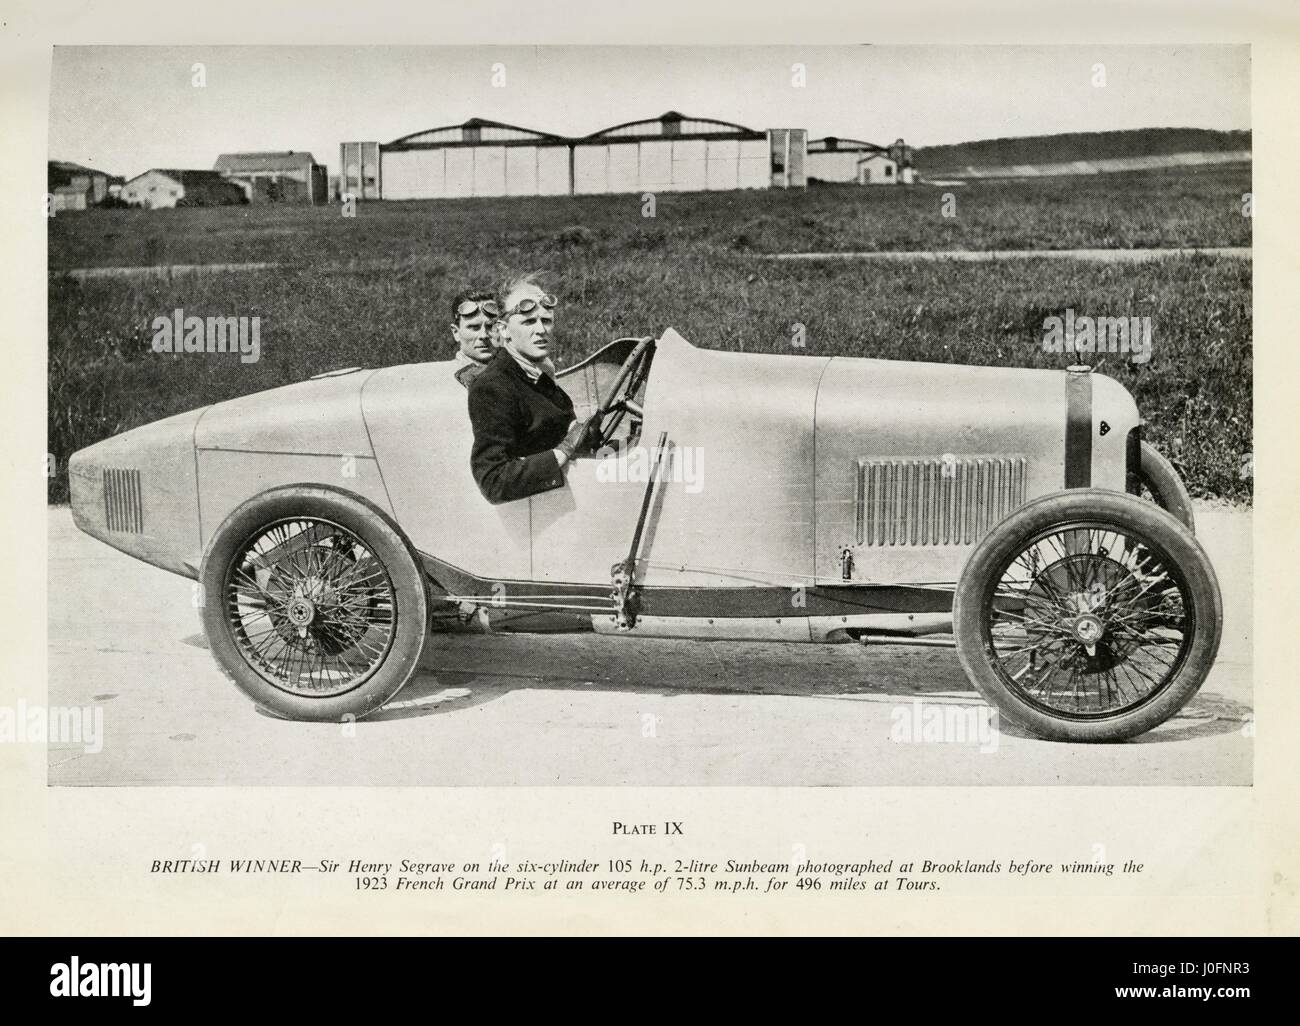 Sir Henry Segrave el 6 cilindros de 105 hp de 2 litro Sunbeam en Brooklands, ganó el Gran Premio de Francia 1923 Foto de stock